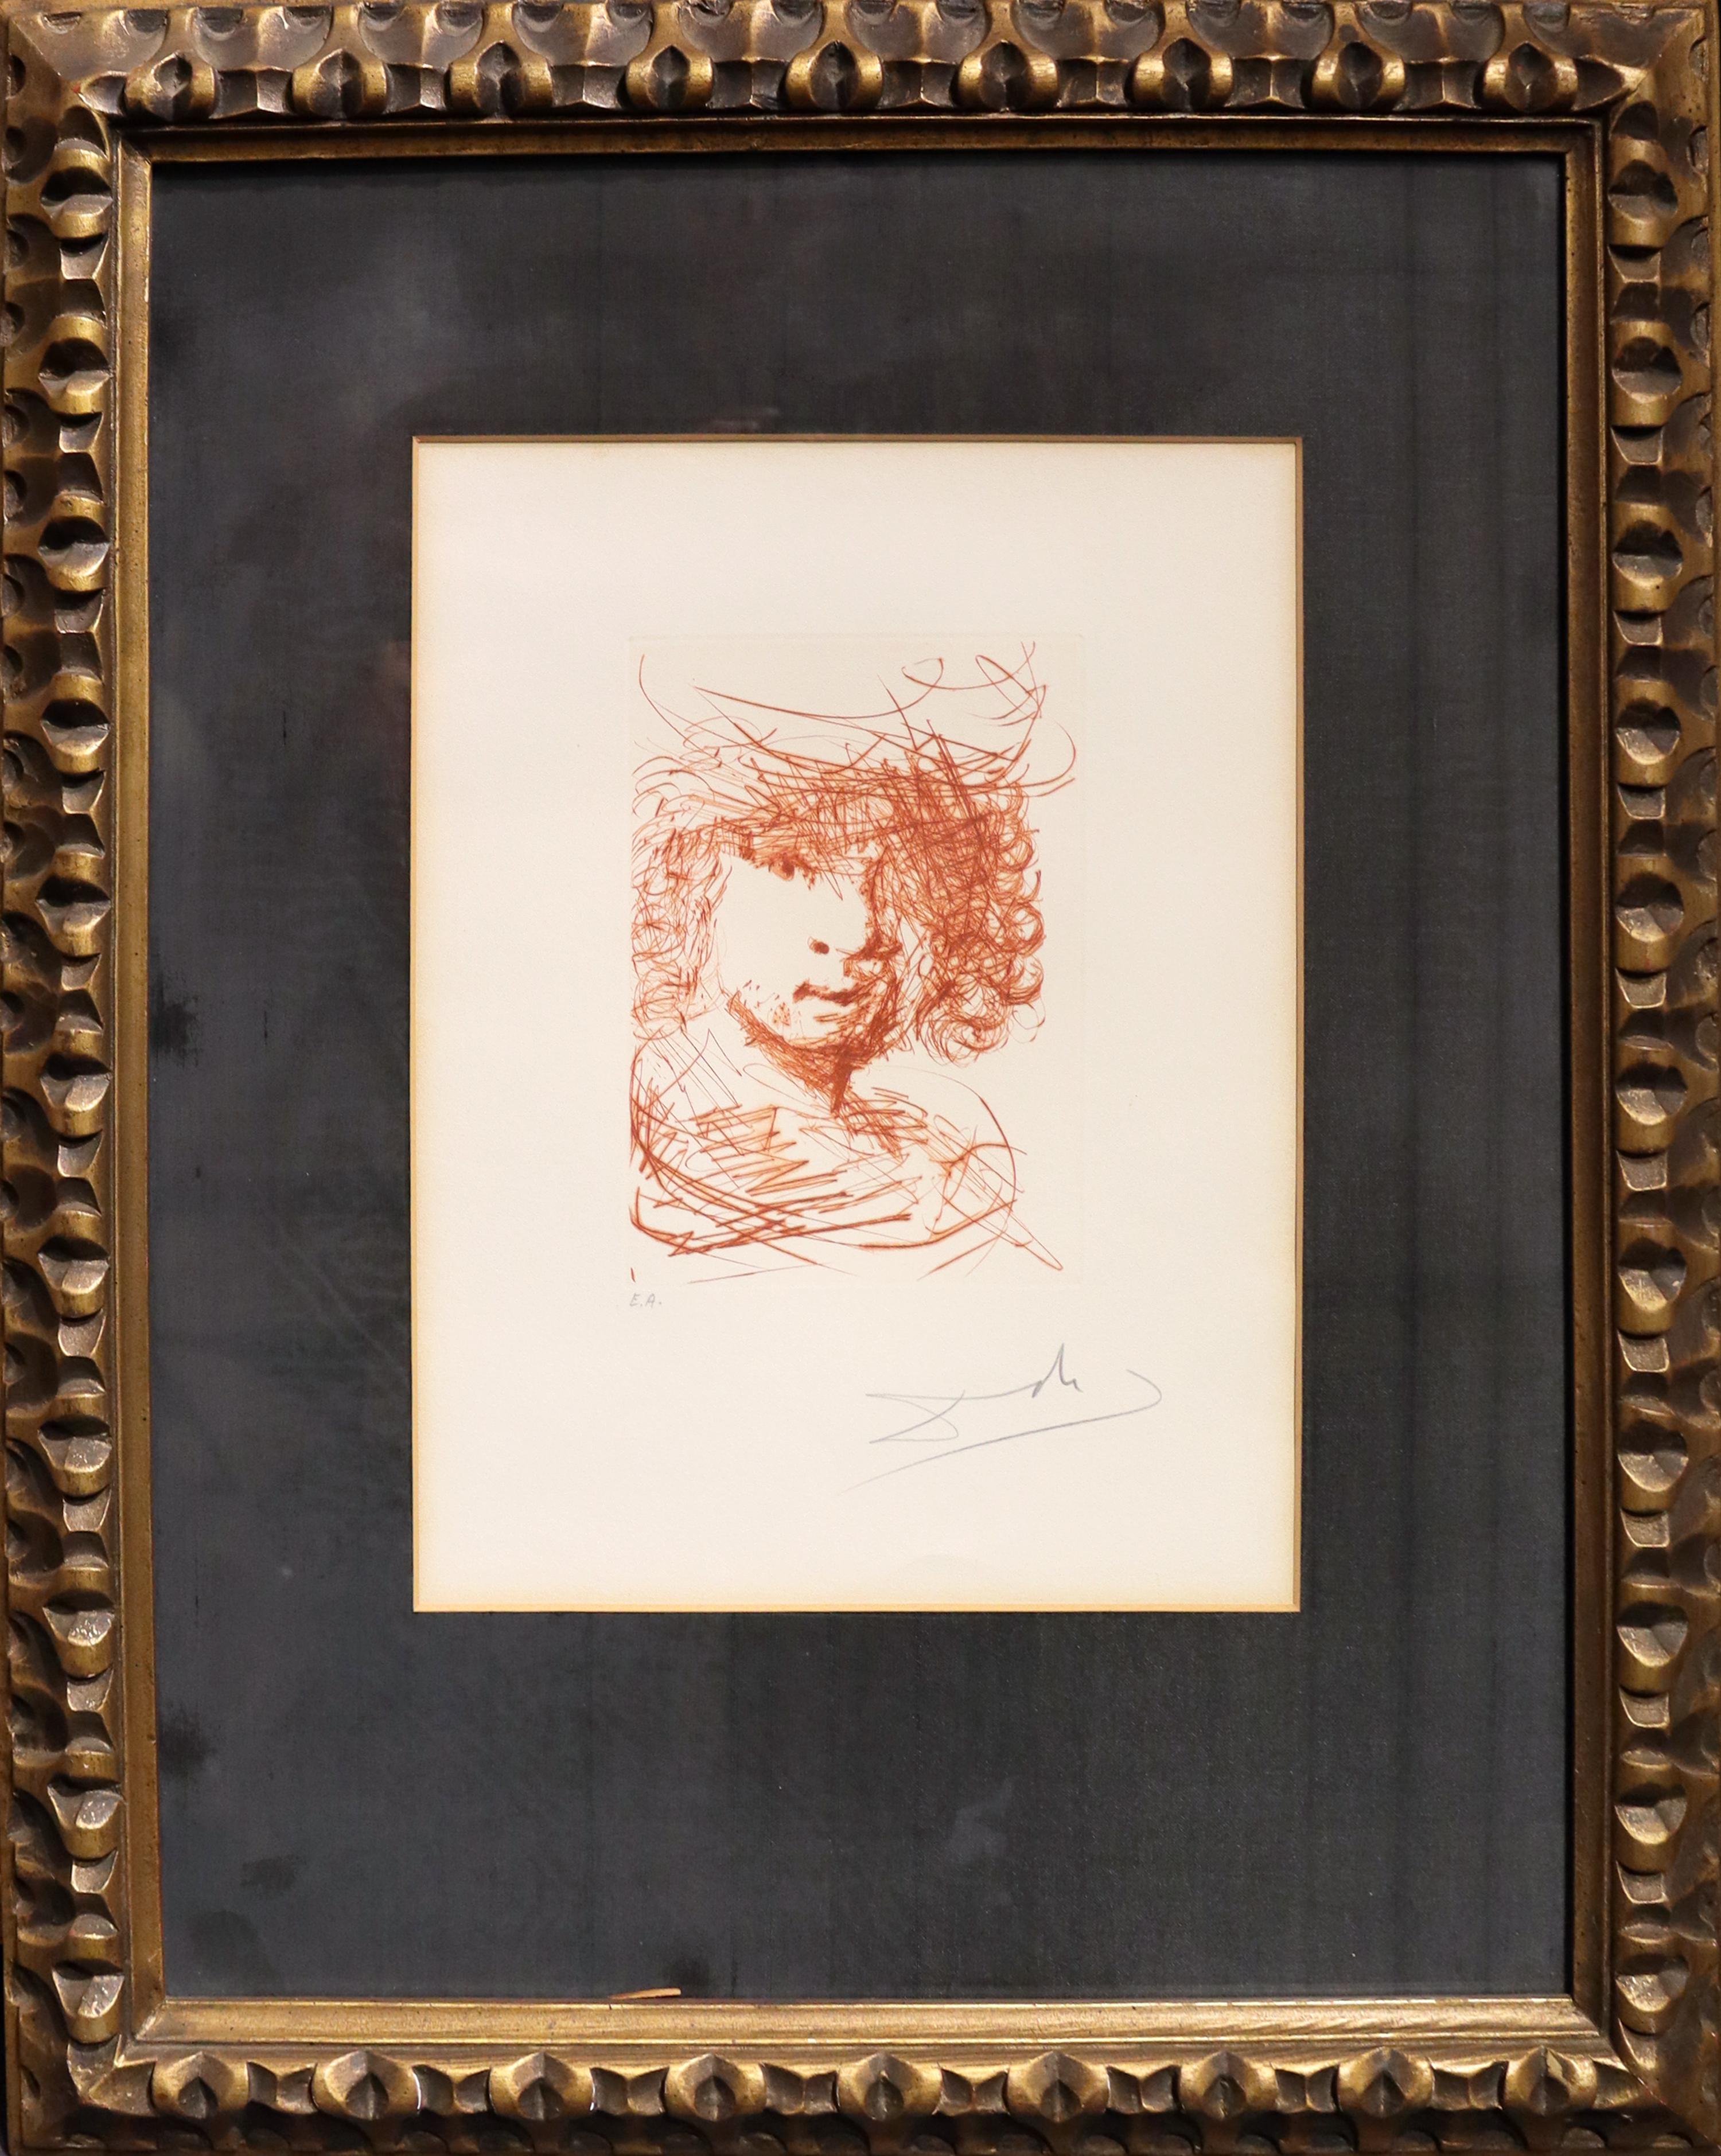 Rembrandt - Print by Salvador Dalí